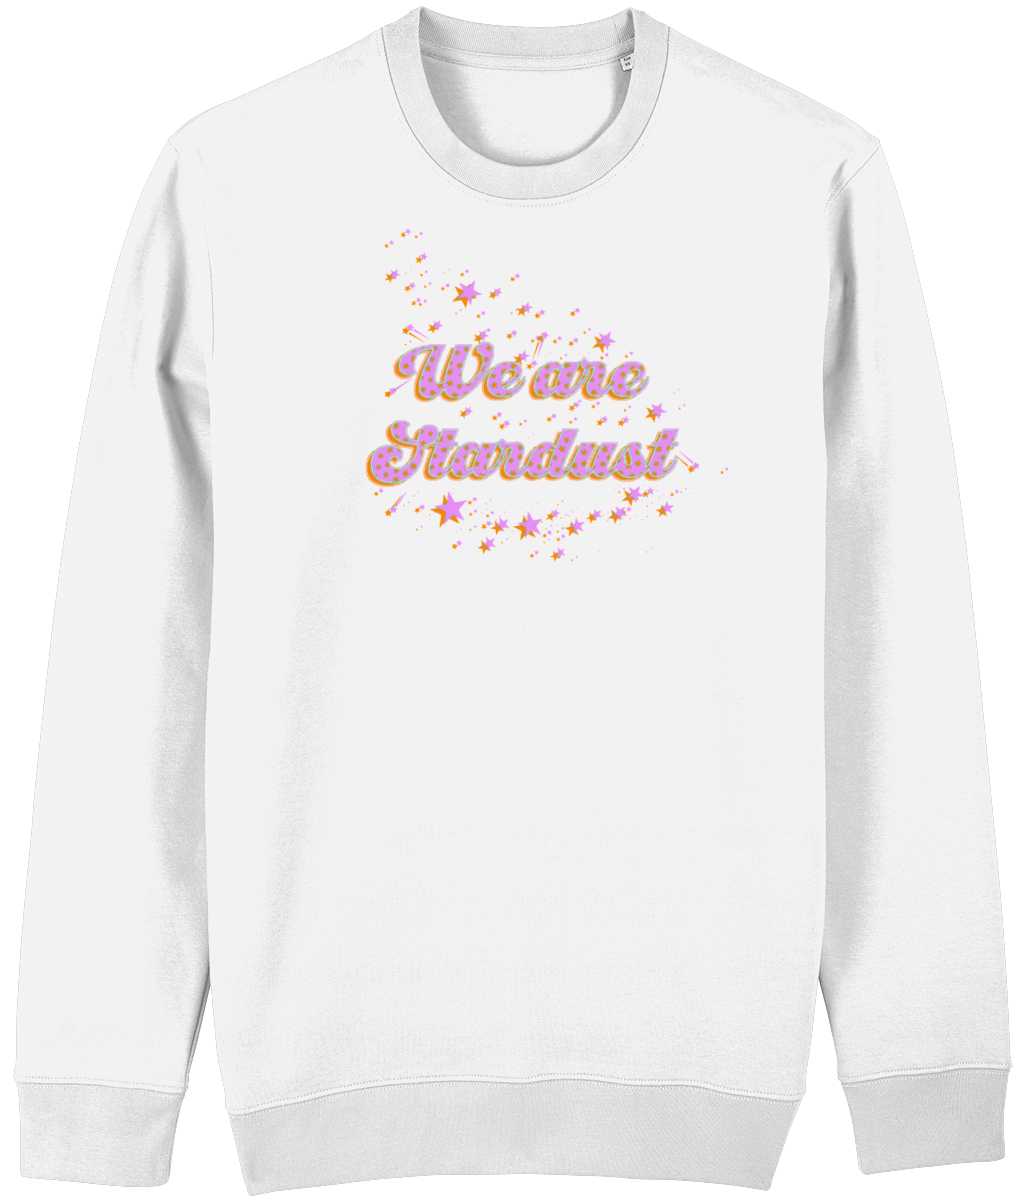 We are Stardust non gender sweatshirt Cherchez La Femme brand